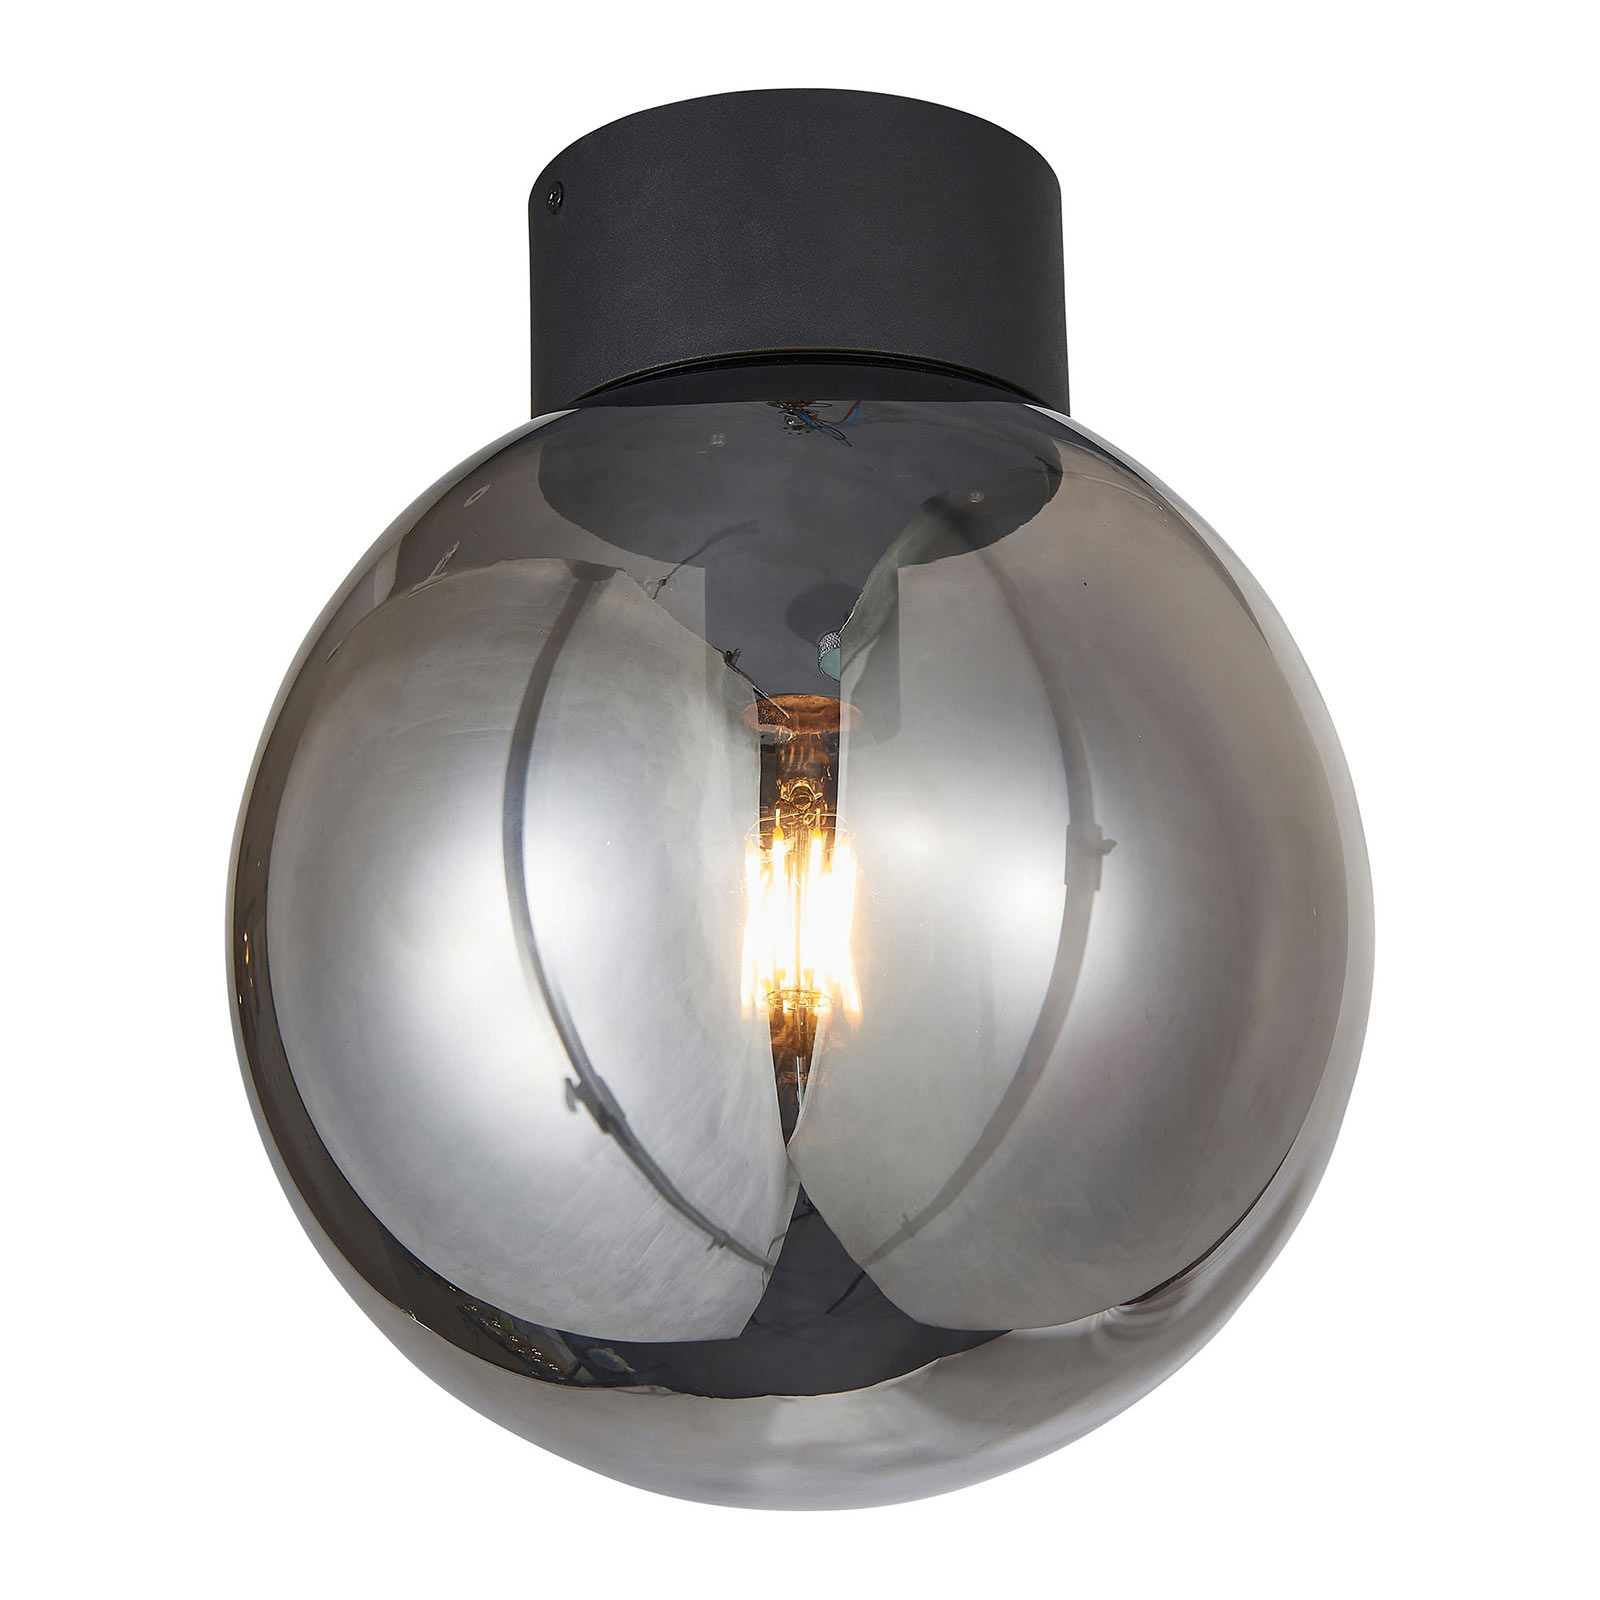 Plafondlamp Astro, bolglas, rookgrijs, Ø 25 cm